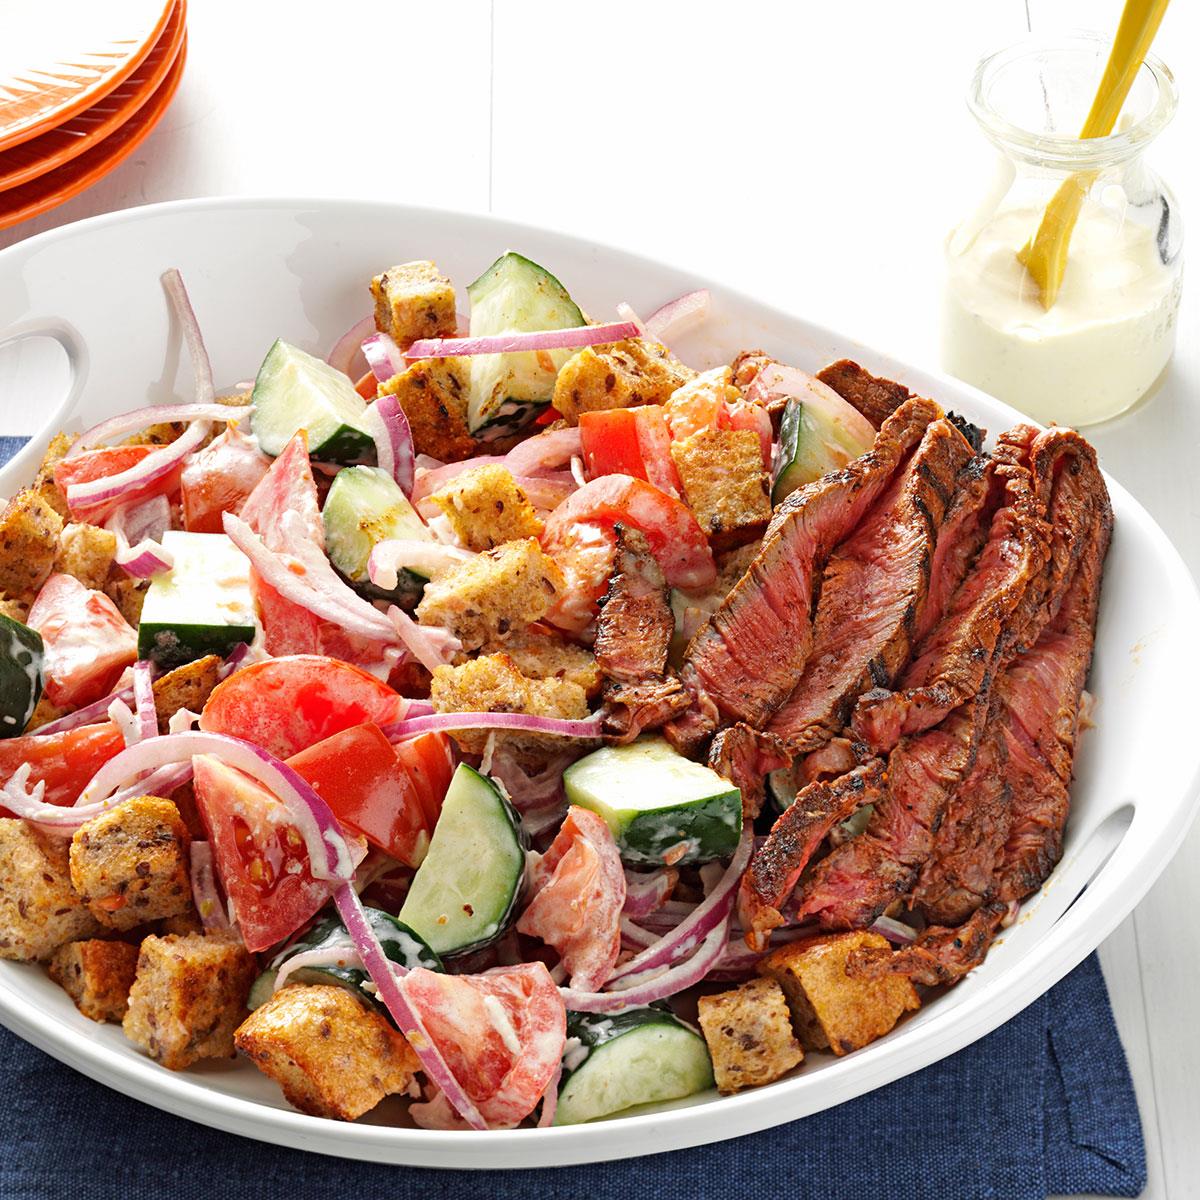 Chili-Rubbed Steak & Bread Salad image